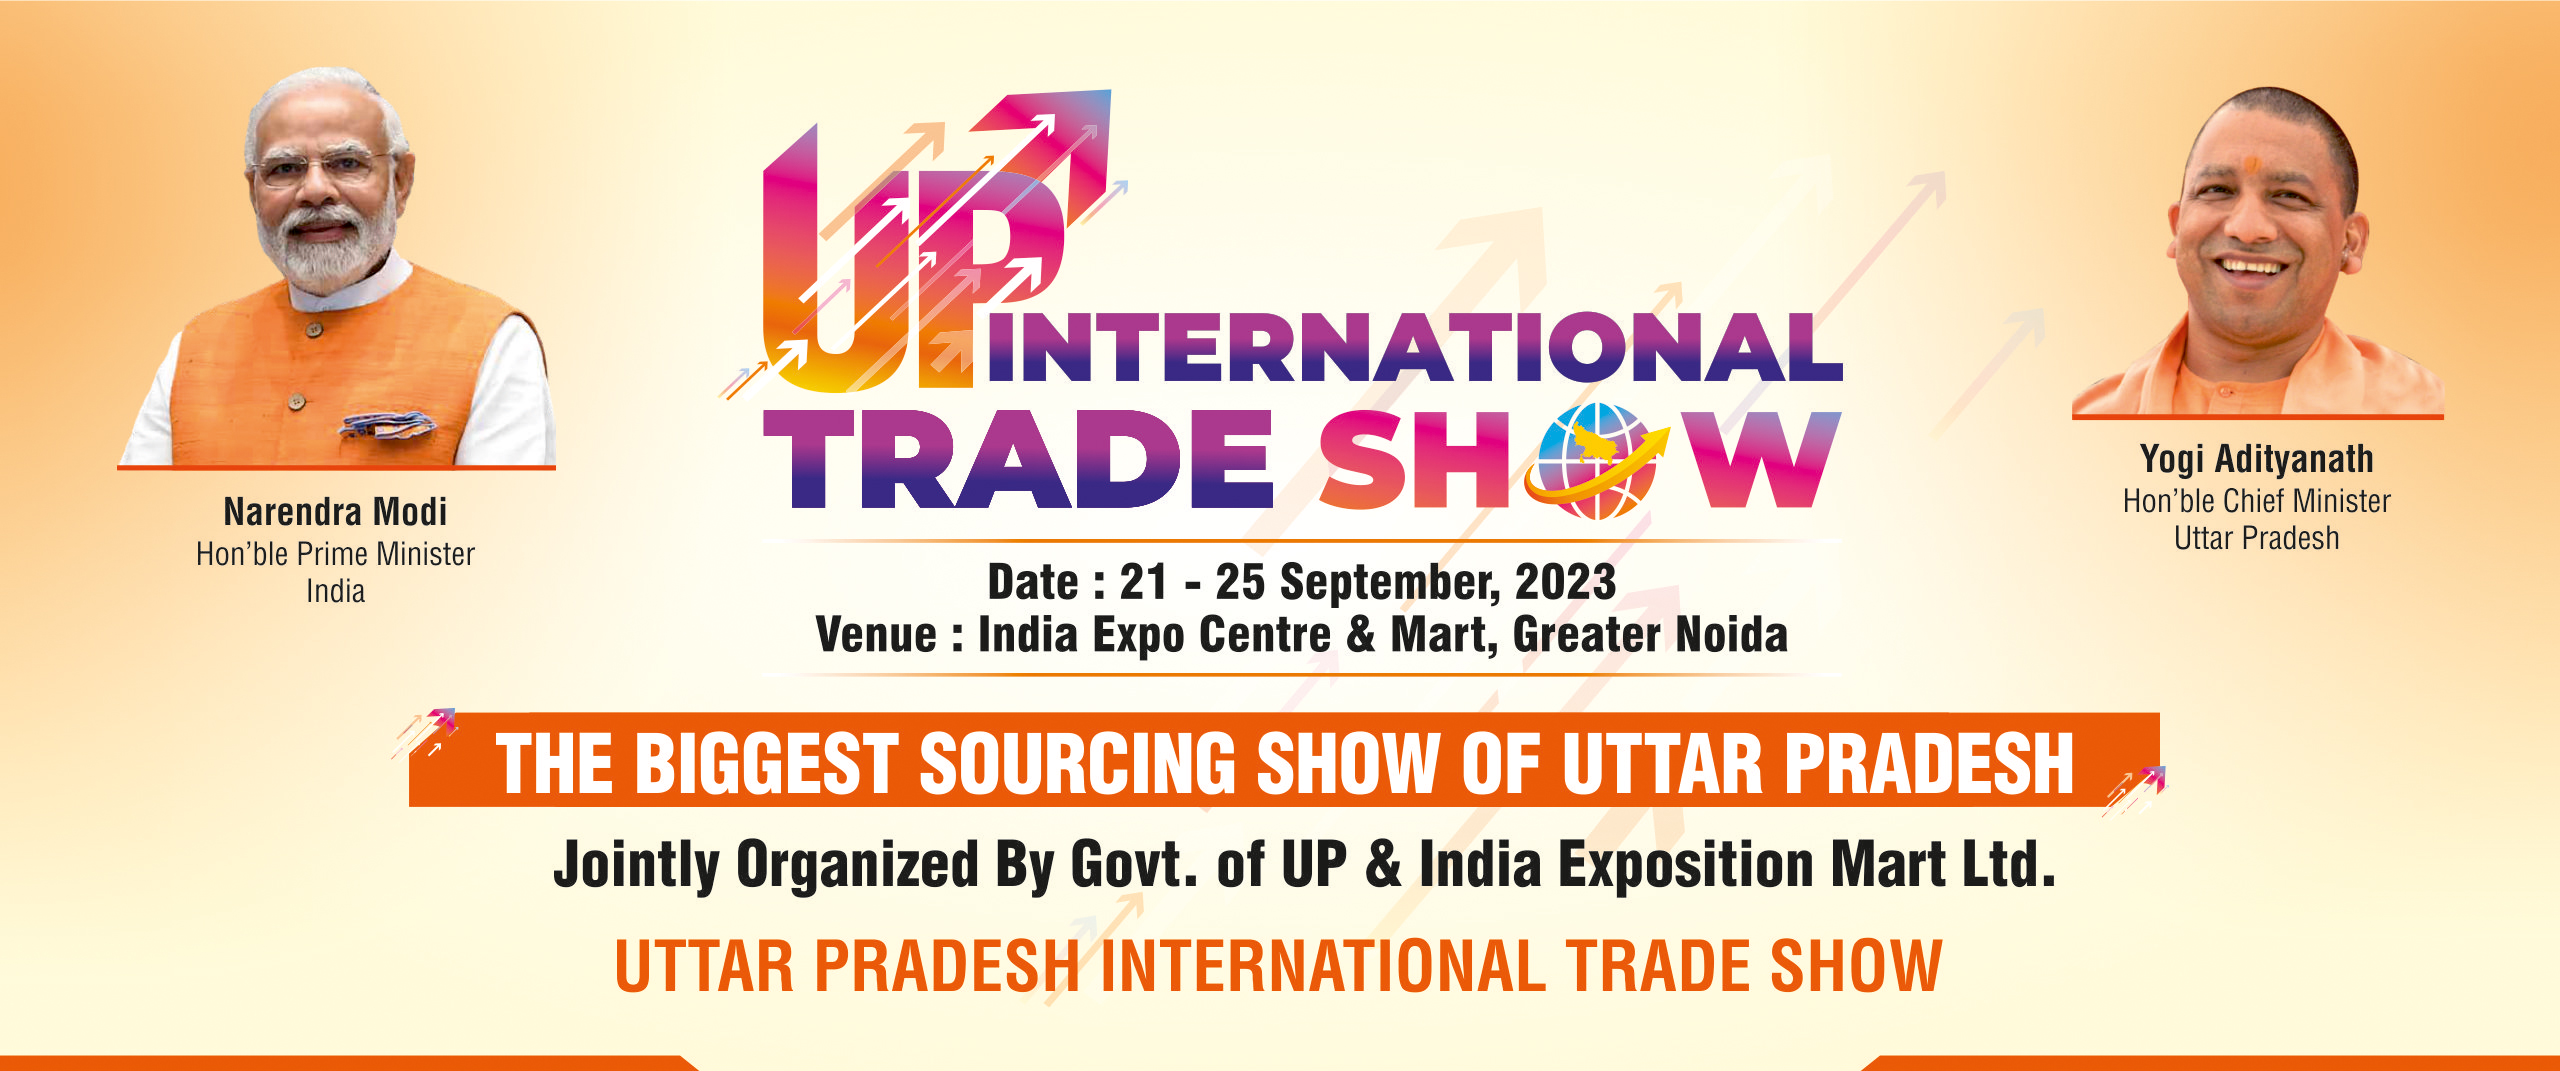 UP International Trade Show: यूपी में 21 सितंबर से शुरू होगा इंटरनेशनल ट्रेड शो, जानिए- खास बातें